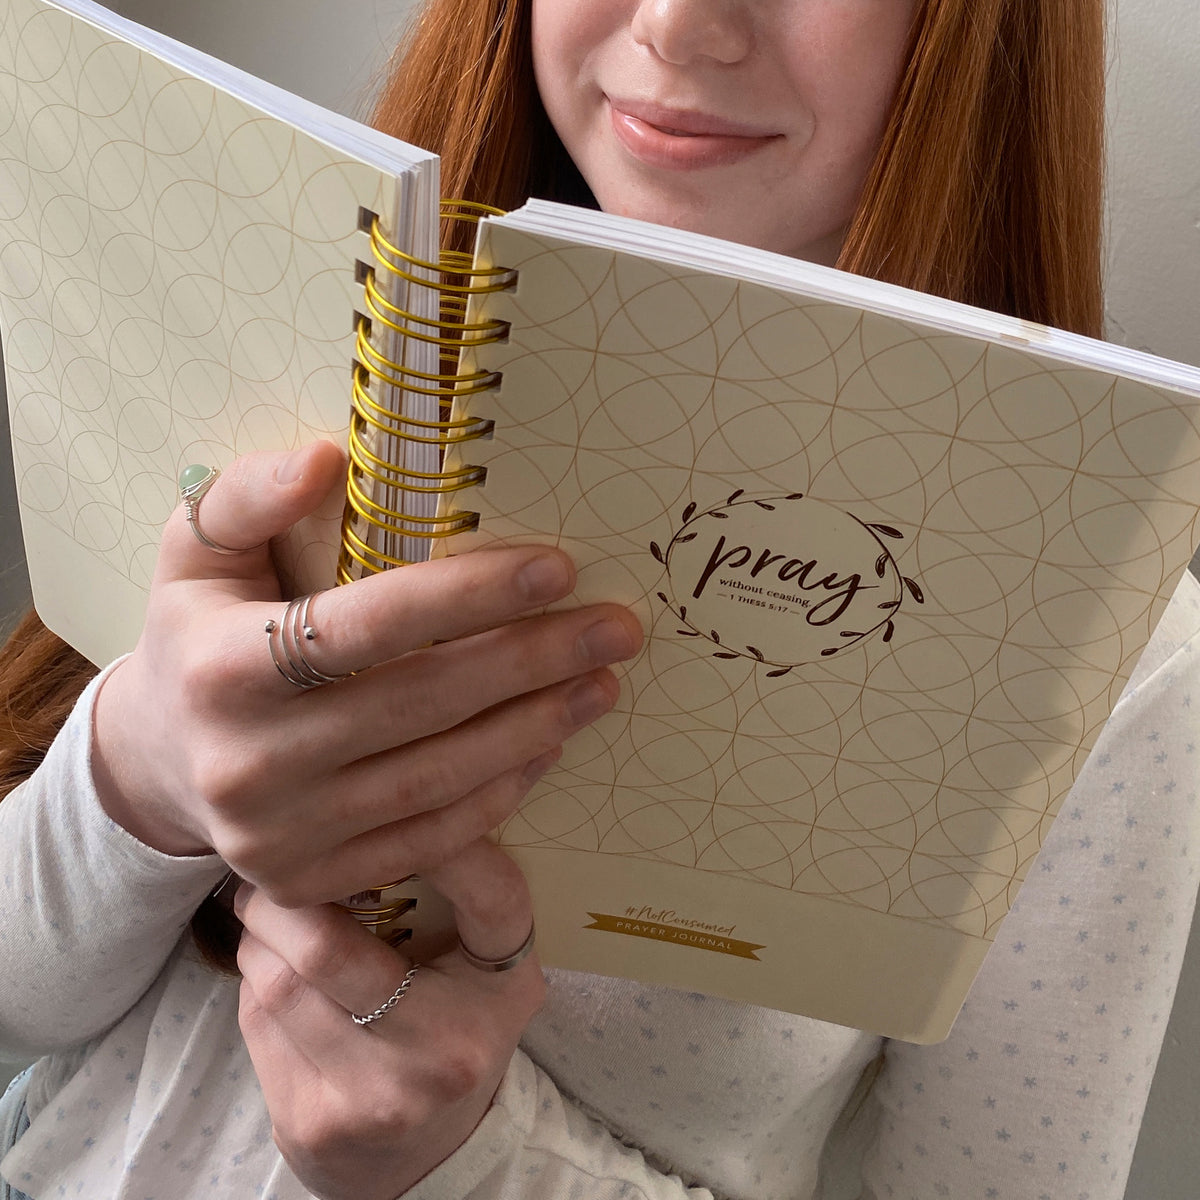 Prayer Journal gift for teen girls